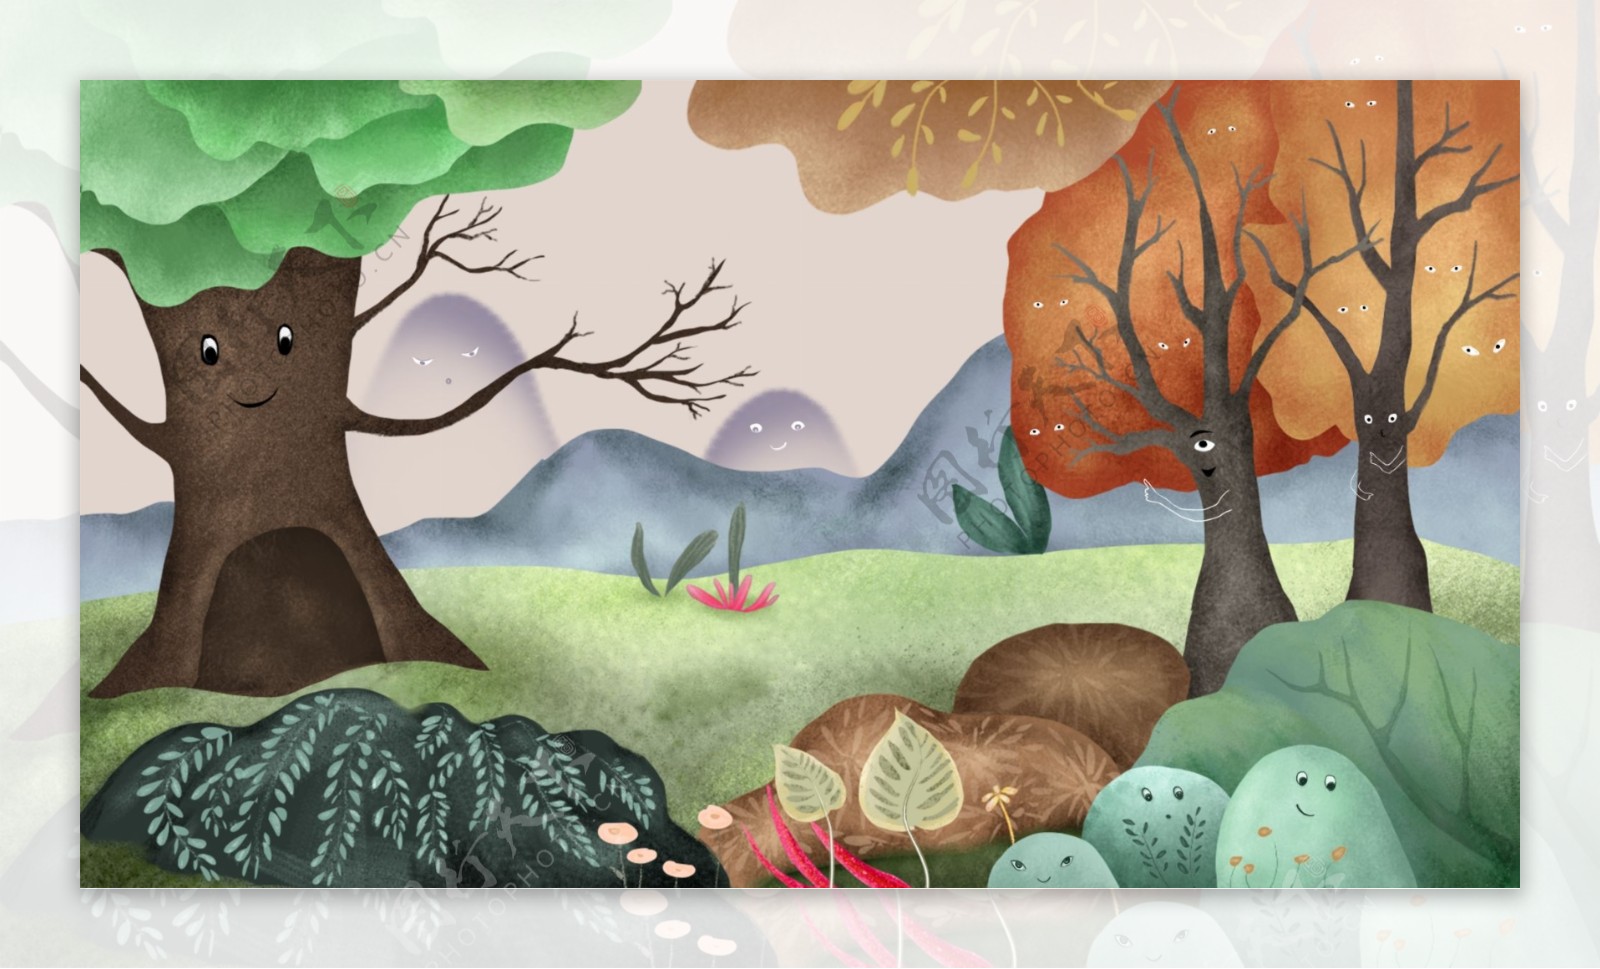 彩绘可爱山物记树林背景设计